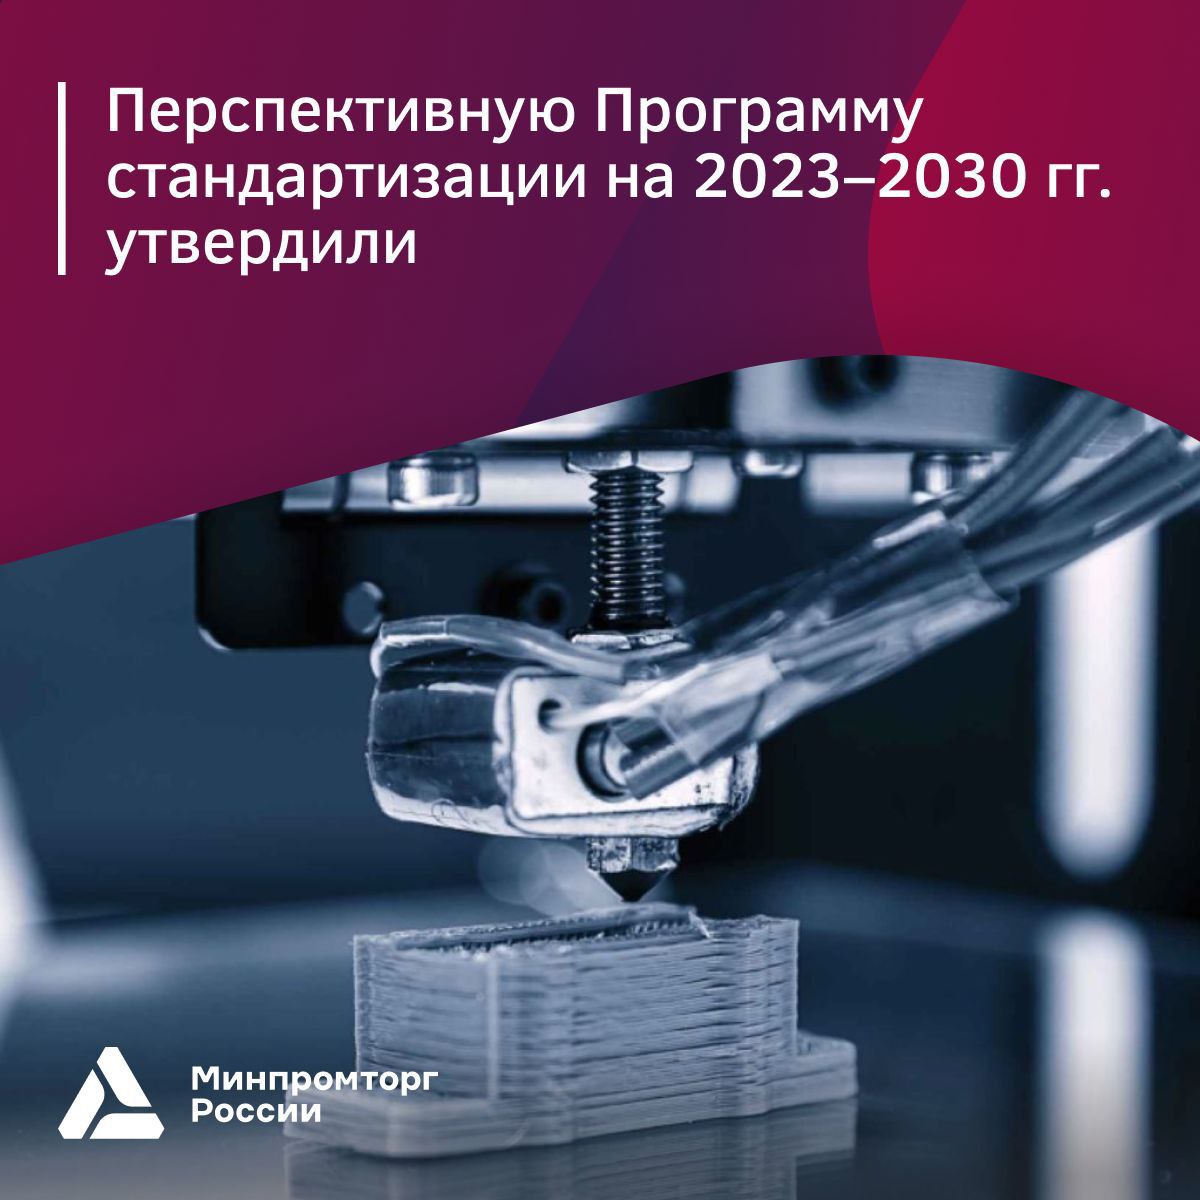 Утверждена перспективная программа стандартизации отрасли аддитивных технологий на 2023-2030 гг.